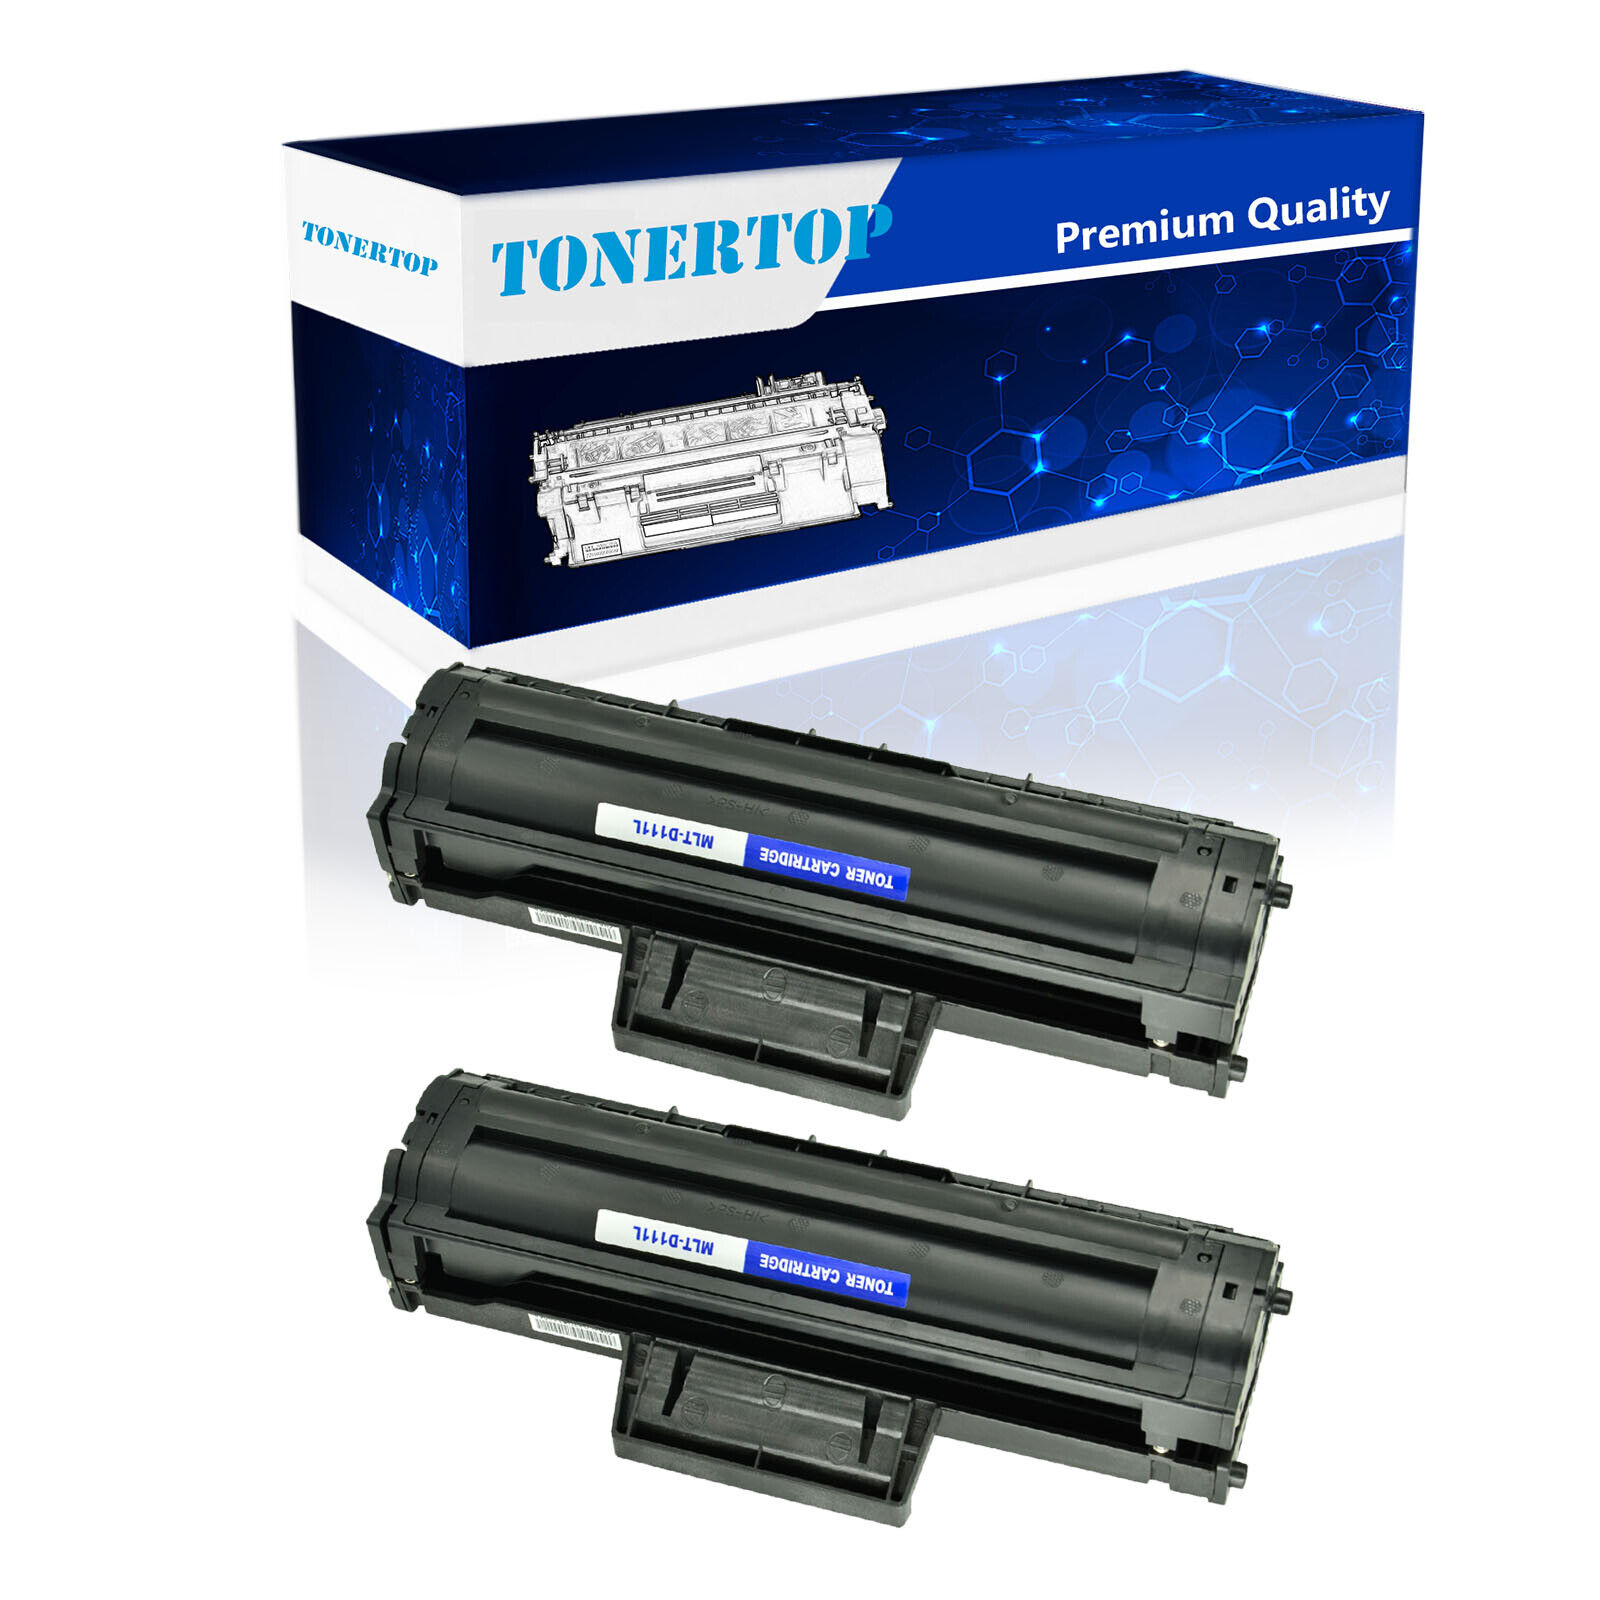 2 PK MLT-D111L High Yield Toner Cartridge for Samsung MLTD111L SL-M2022W M2070